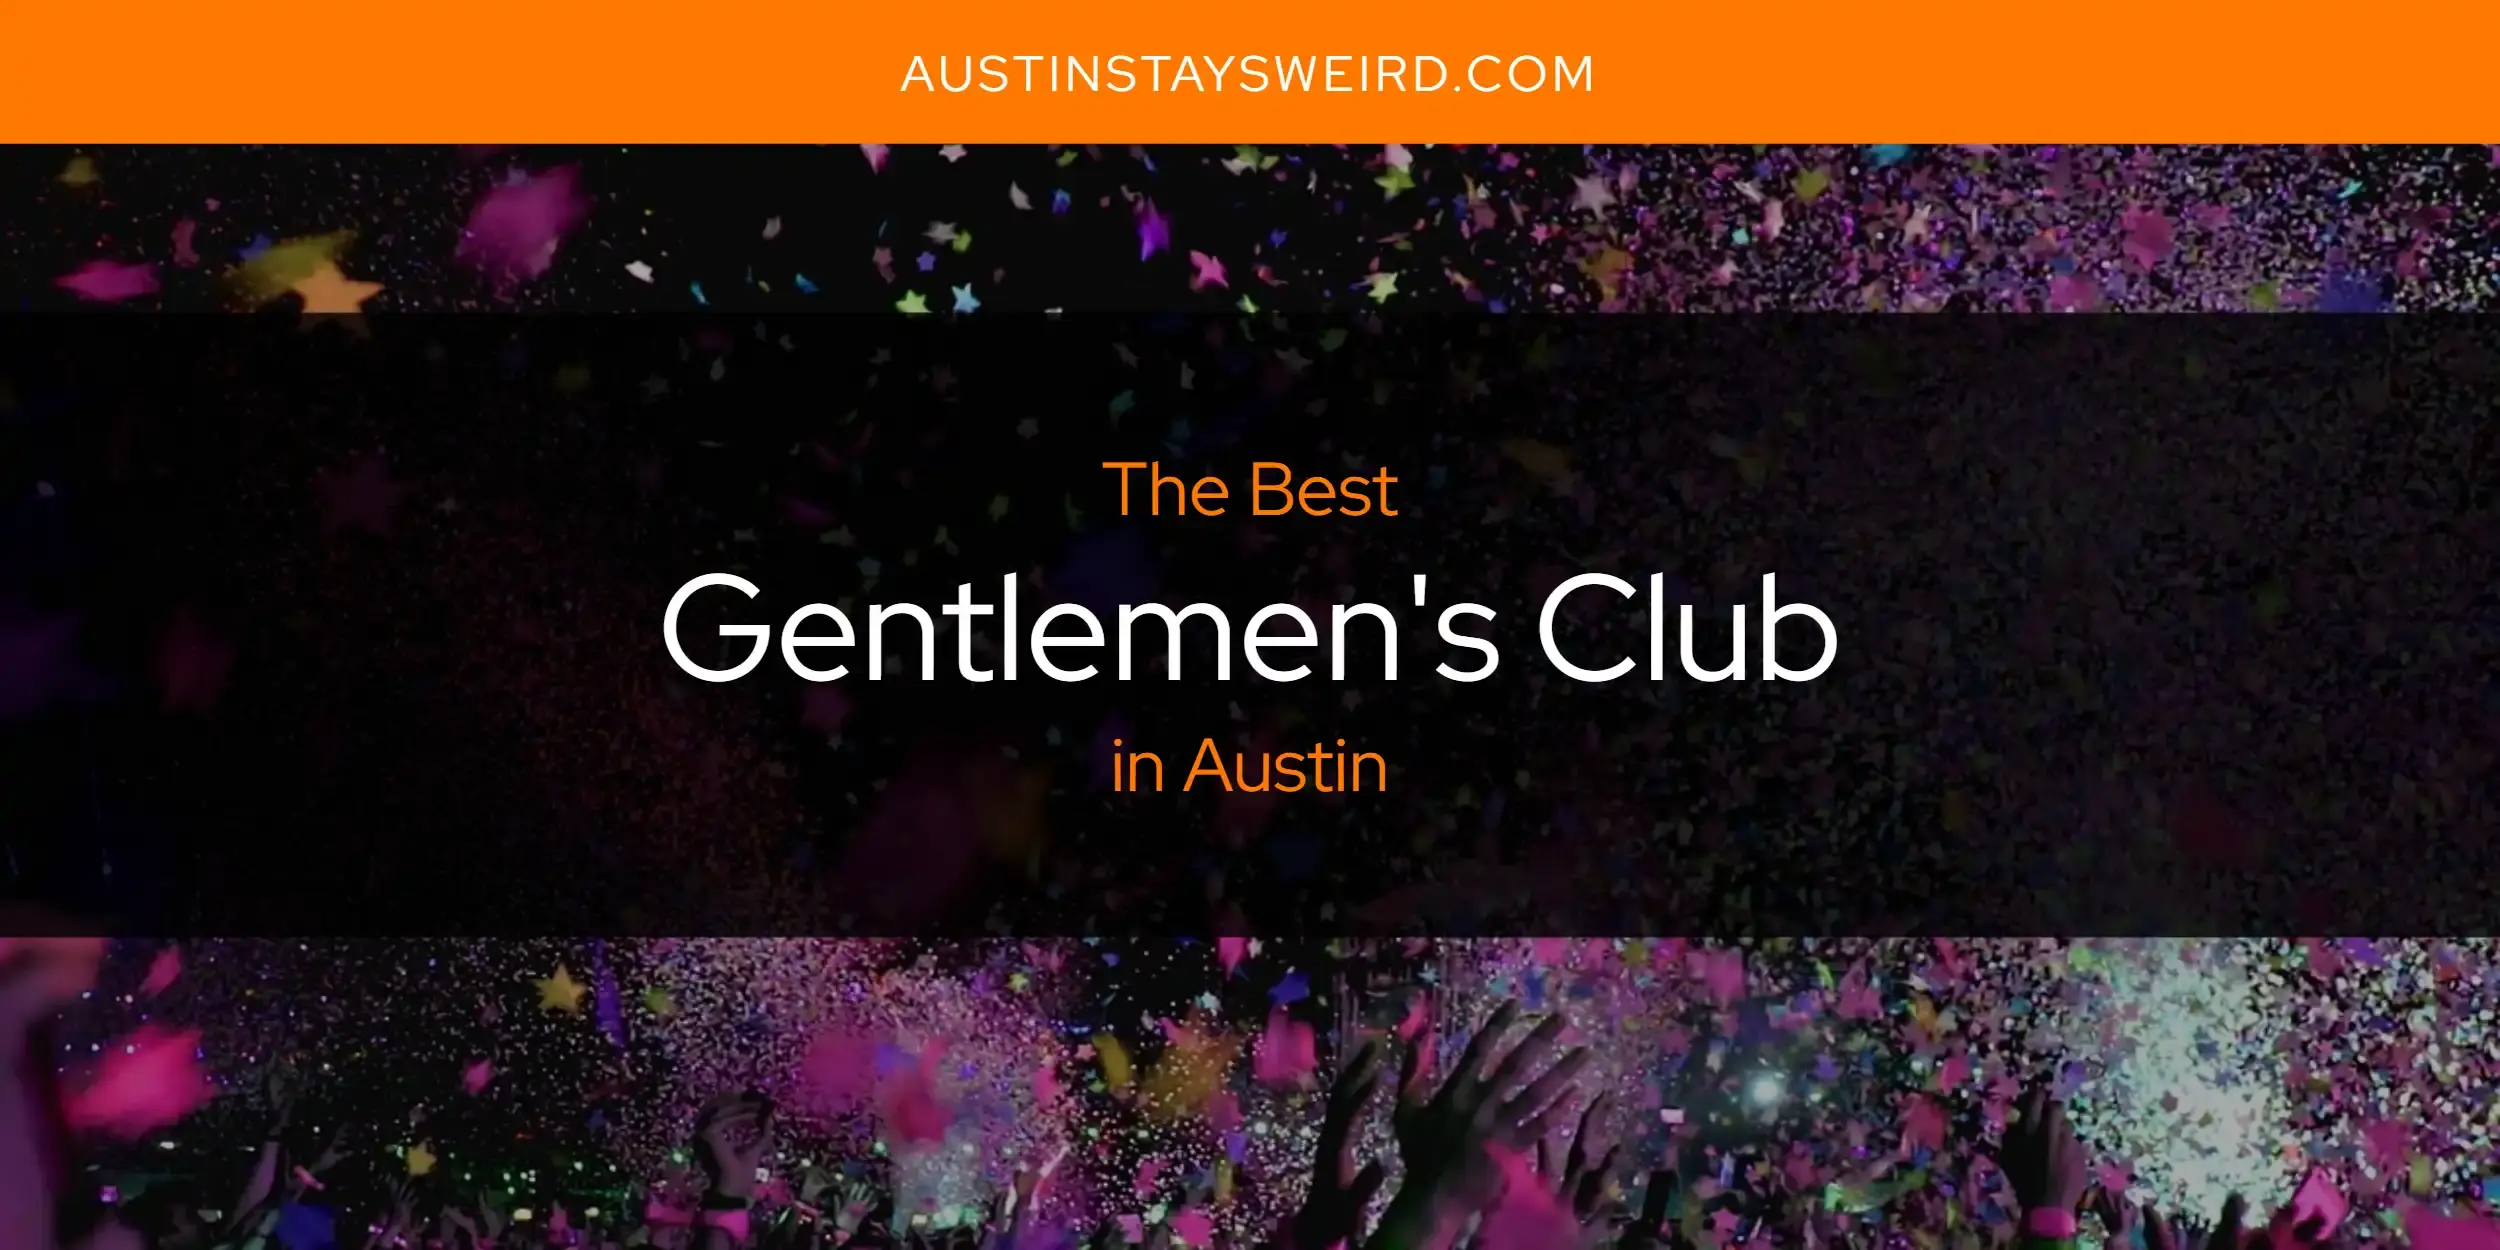 Best Gentlemen's Club in Austin? Here's the Top 8